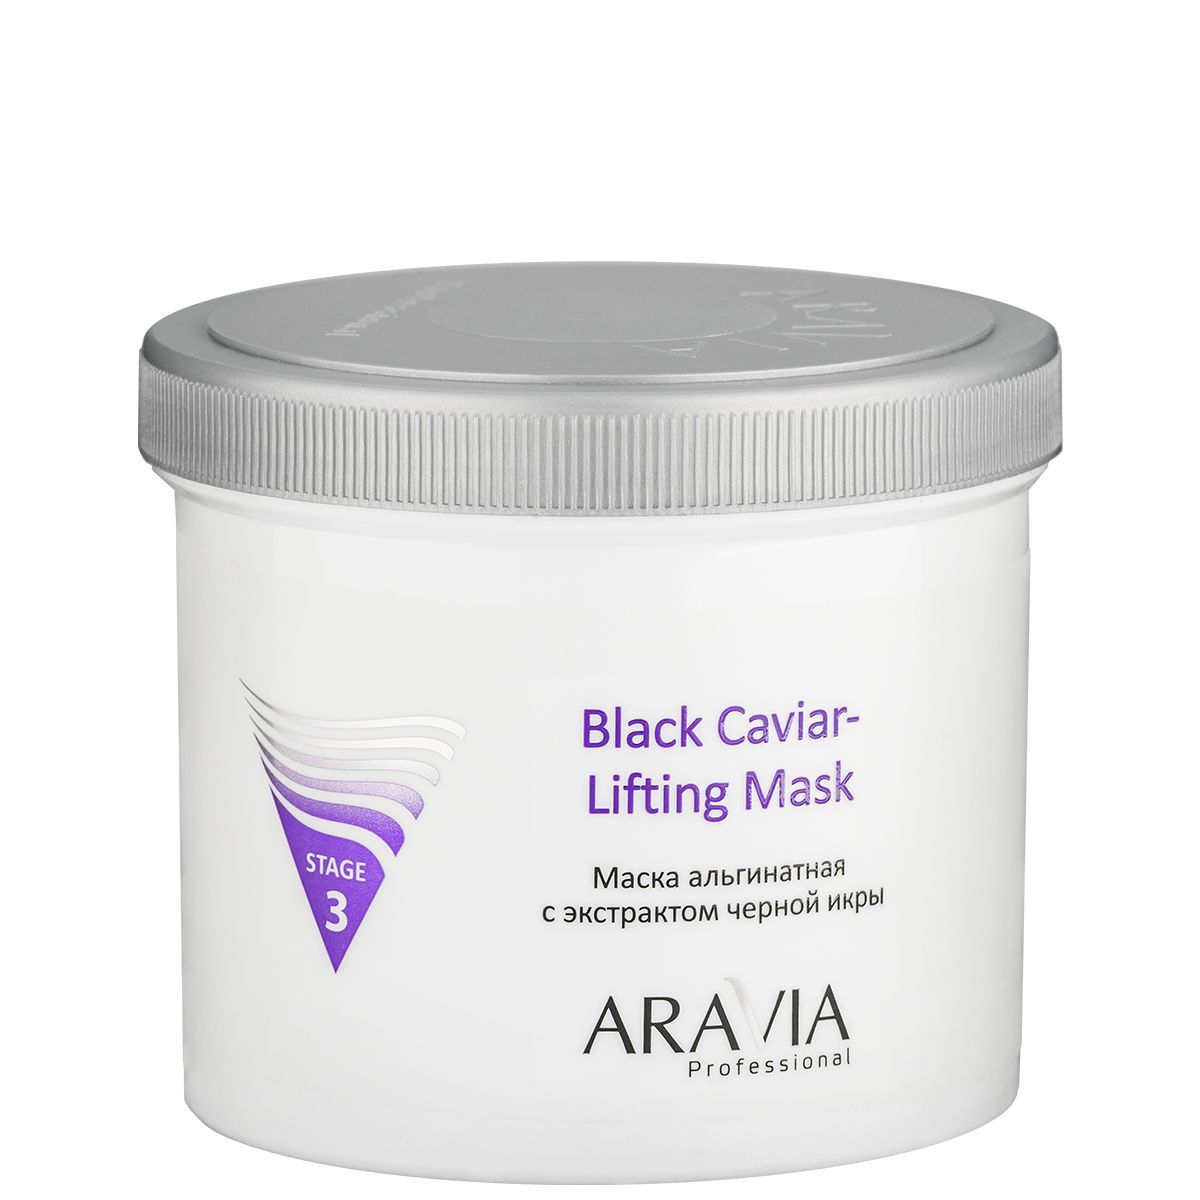 Aravia Professional Маска альгинатная с экстрактом черной икры Black Caviar-Lifting, 550мл